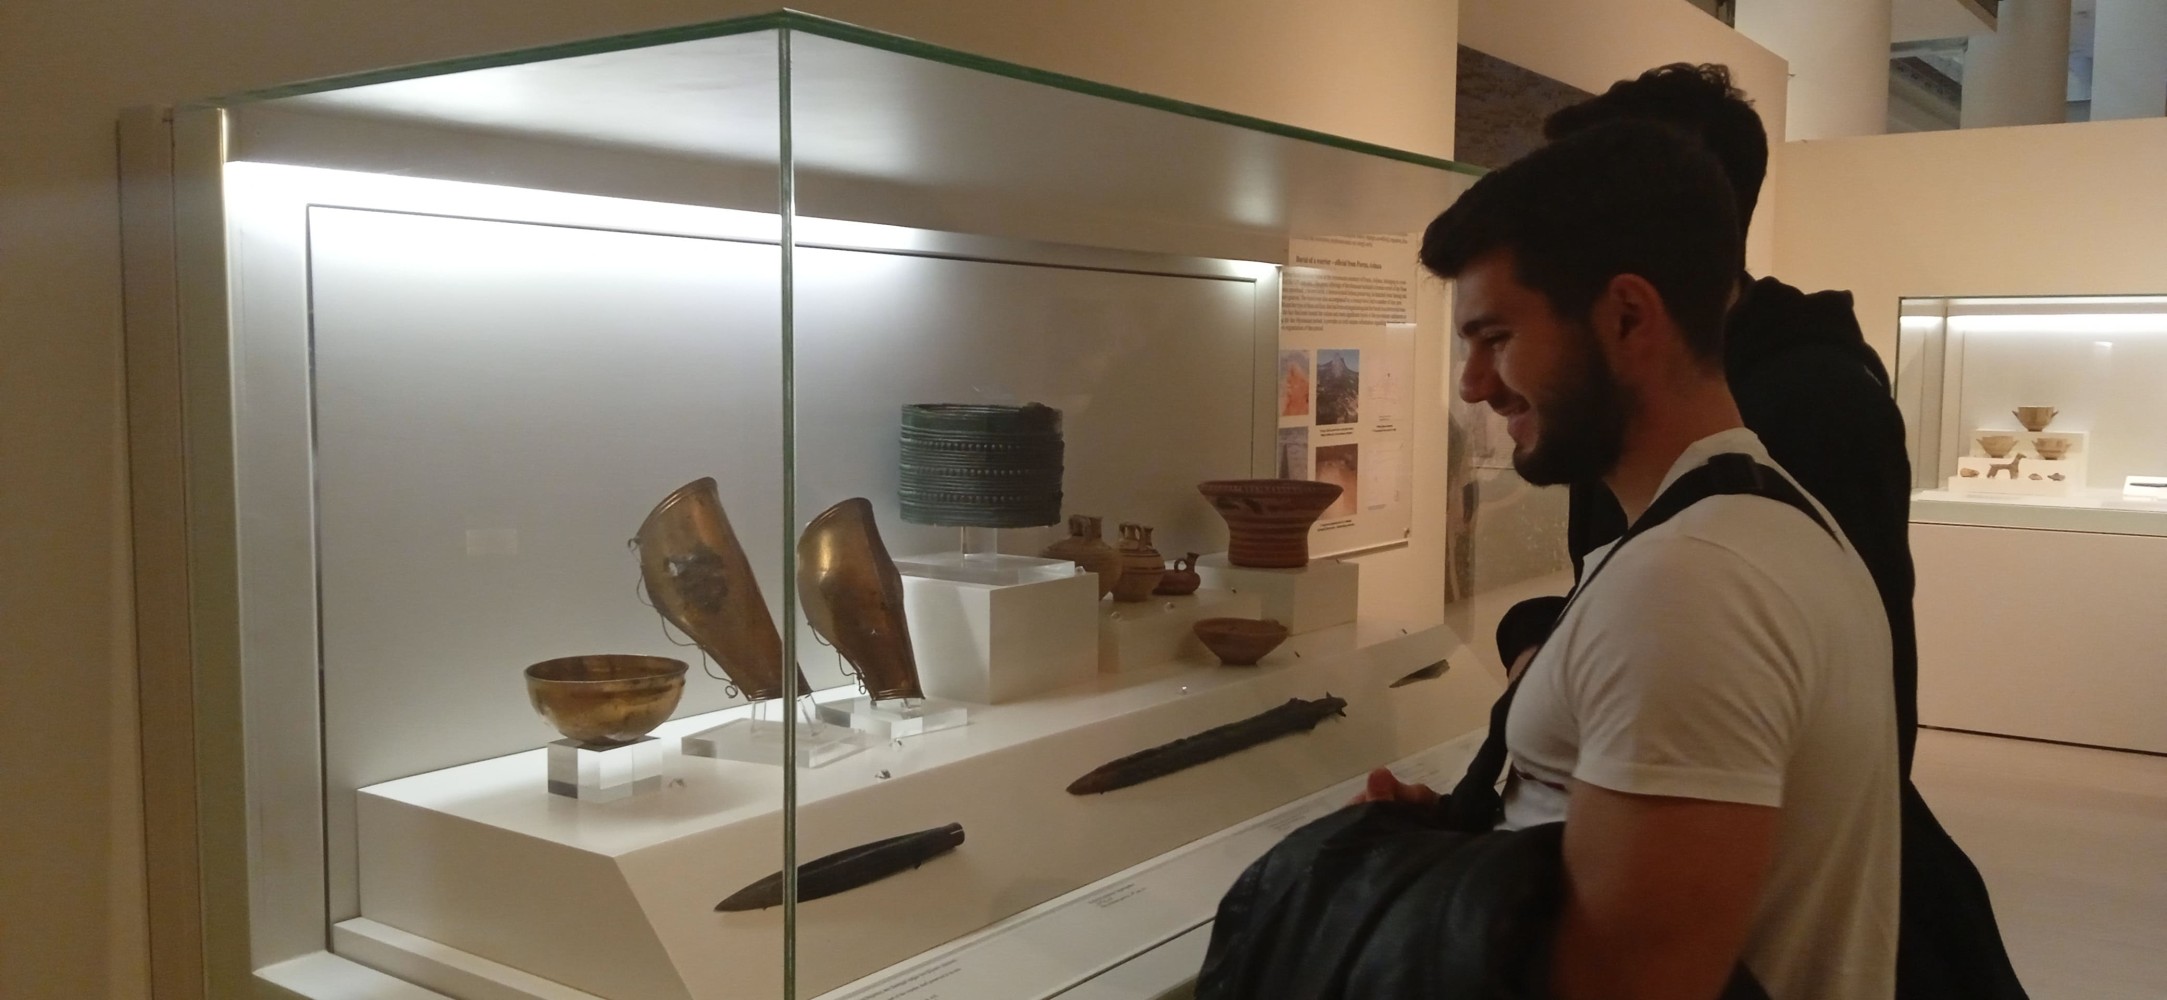 Εκπαιδευτική επίσκεψη των σπουδαστών στο Αρχαιολογικό Μουσείο της Πάτρας